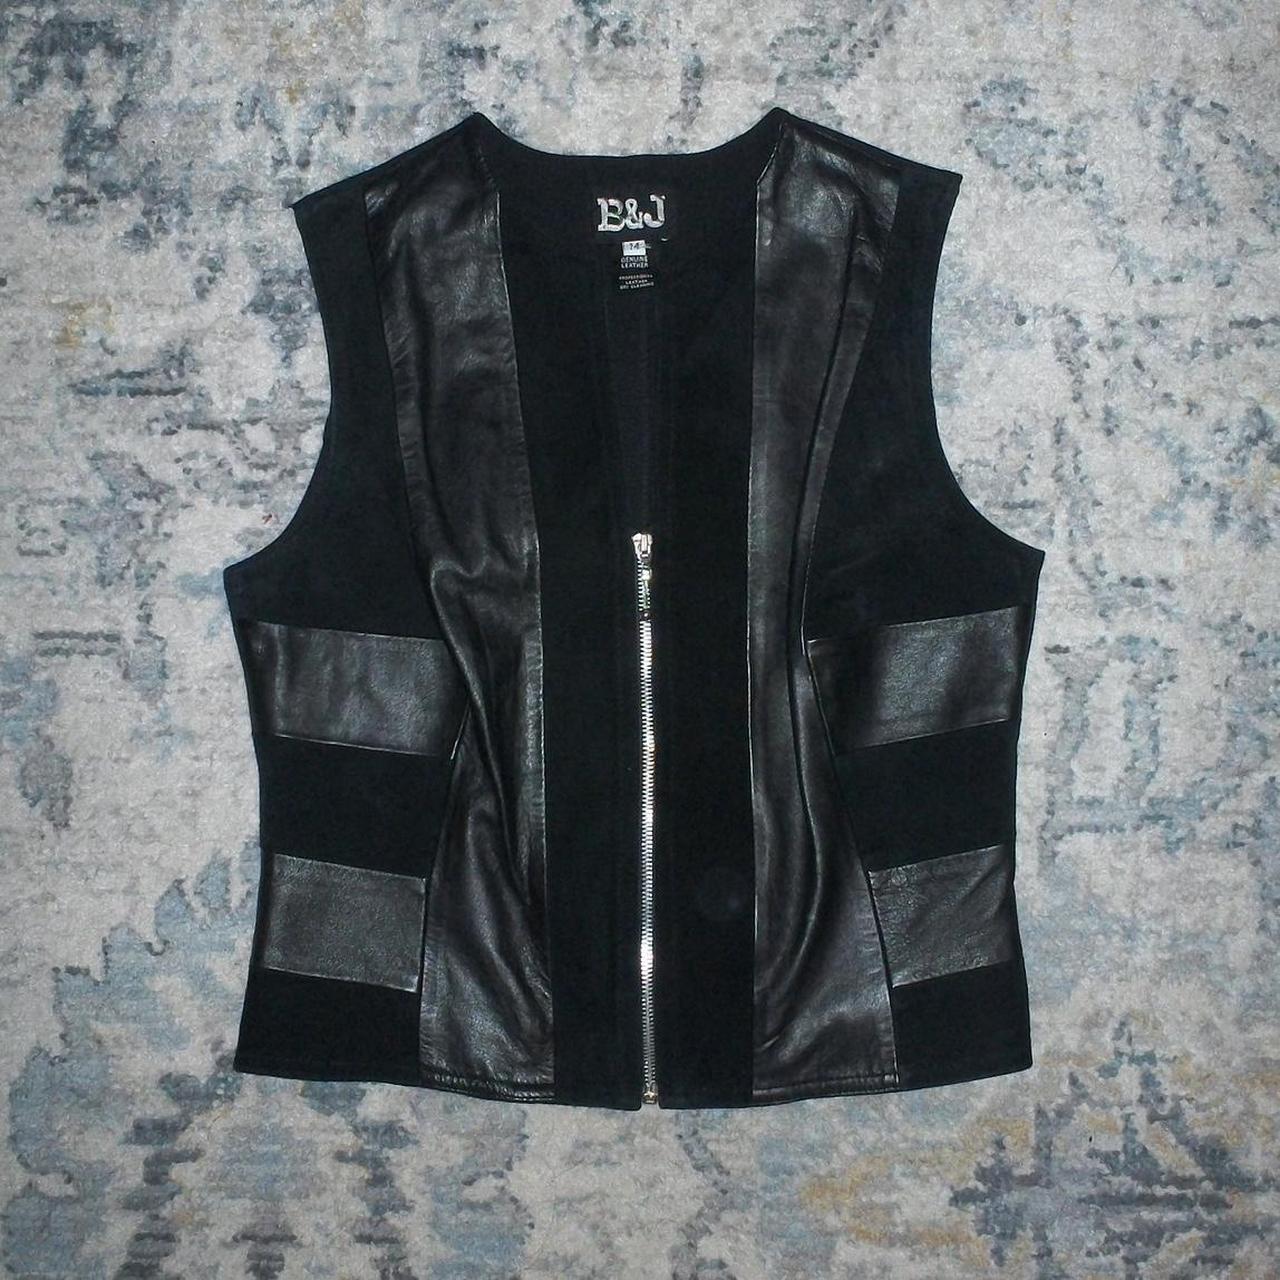 vintage B&J genuine leather vest - size 14 - fits... - Depop